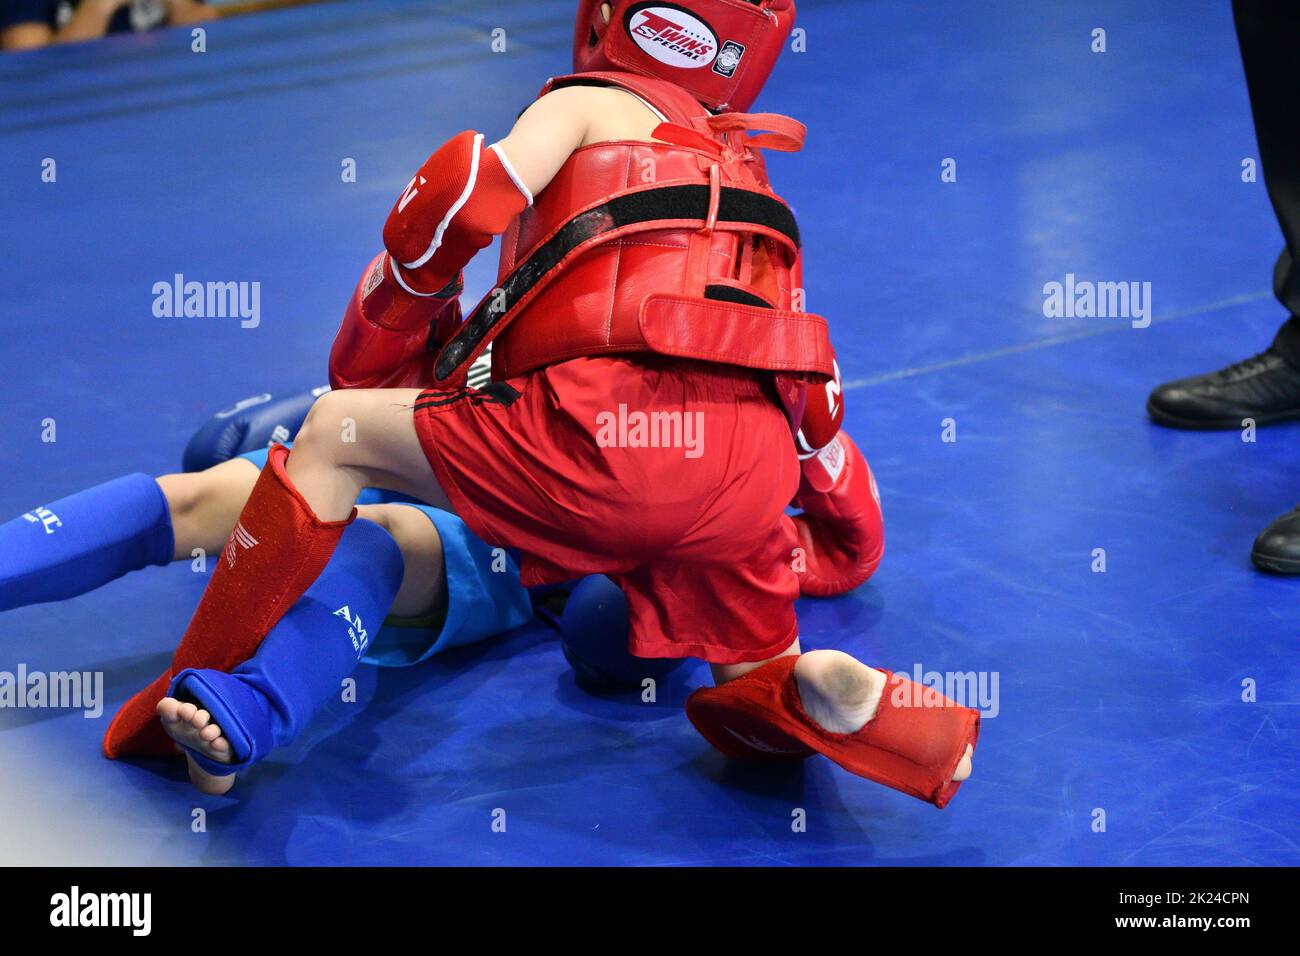 Orenbourg, Russie - 20 octobre 2019: Un garçon concourra en boxe thaï pour la coupe d'Orenbourg en boxe thaï – Muay Thai – art martial Thaïlande Banque D'Images